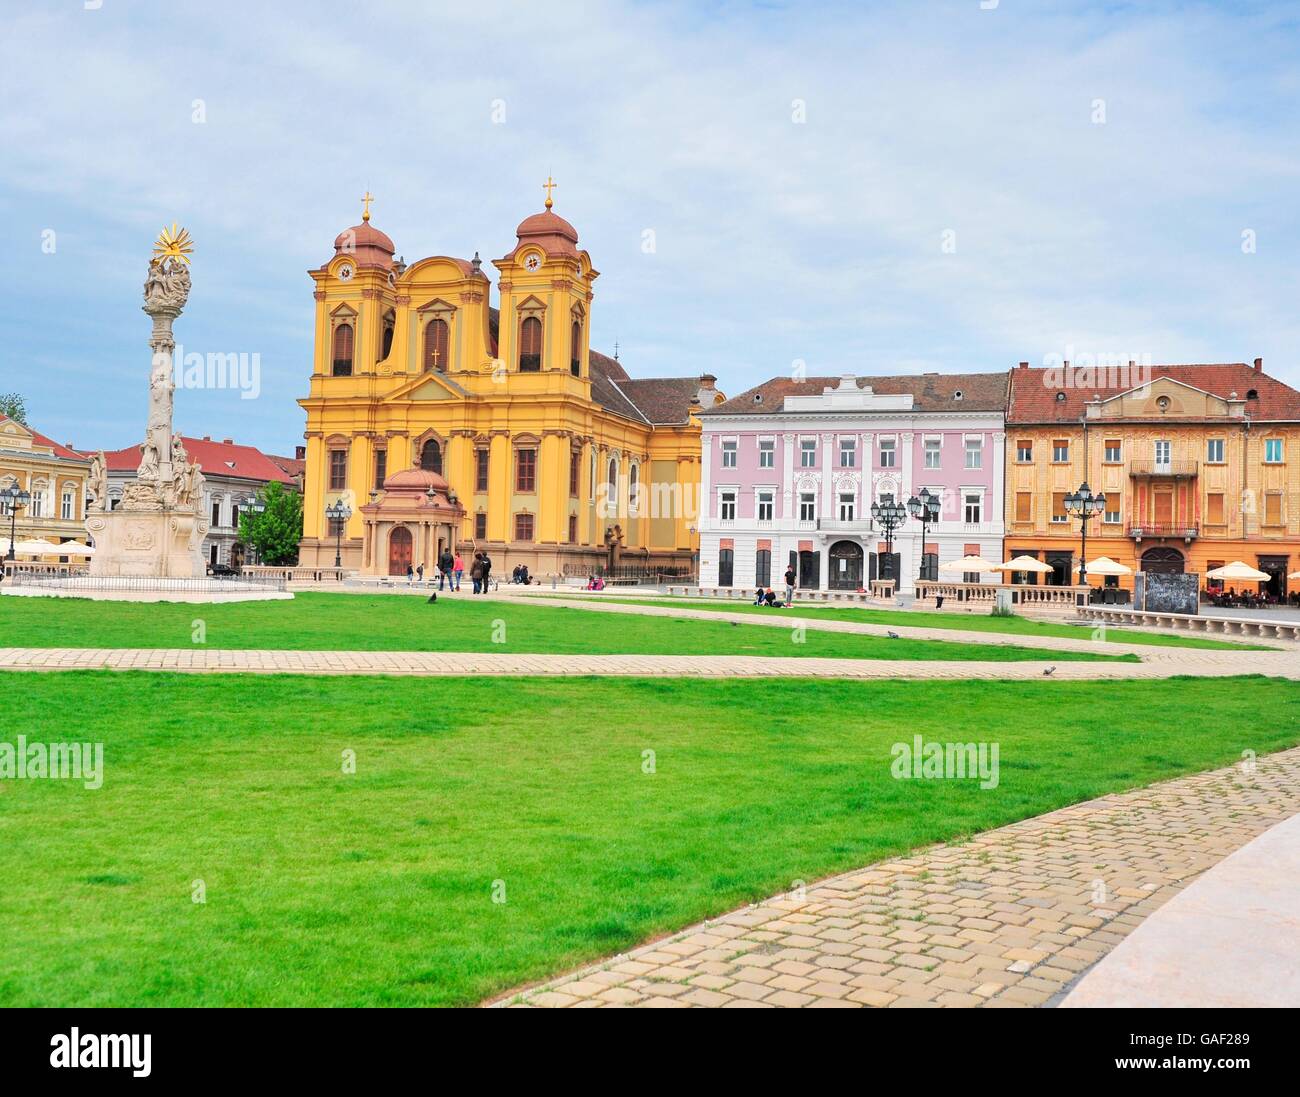 Vista de la plaza principal en el centro histórico de la ciudad de Timisoara, Rumania Foto de stock